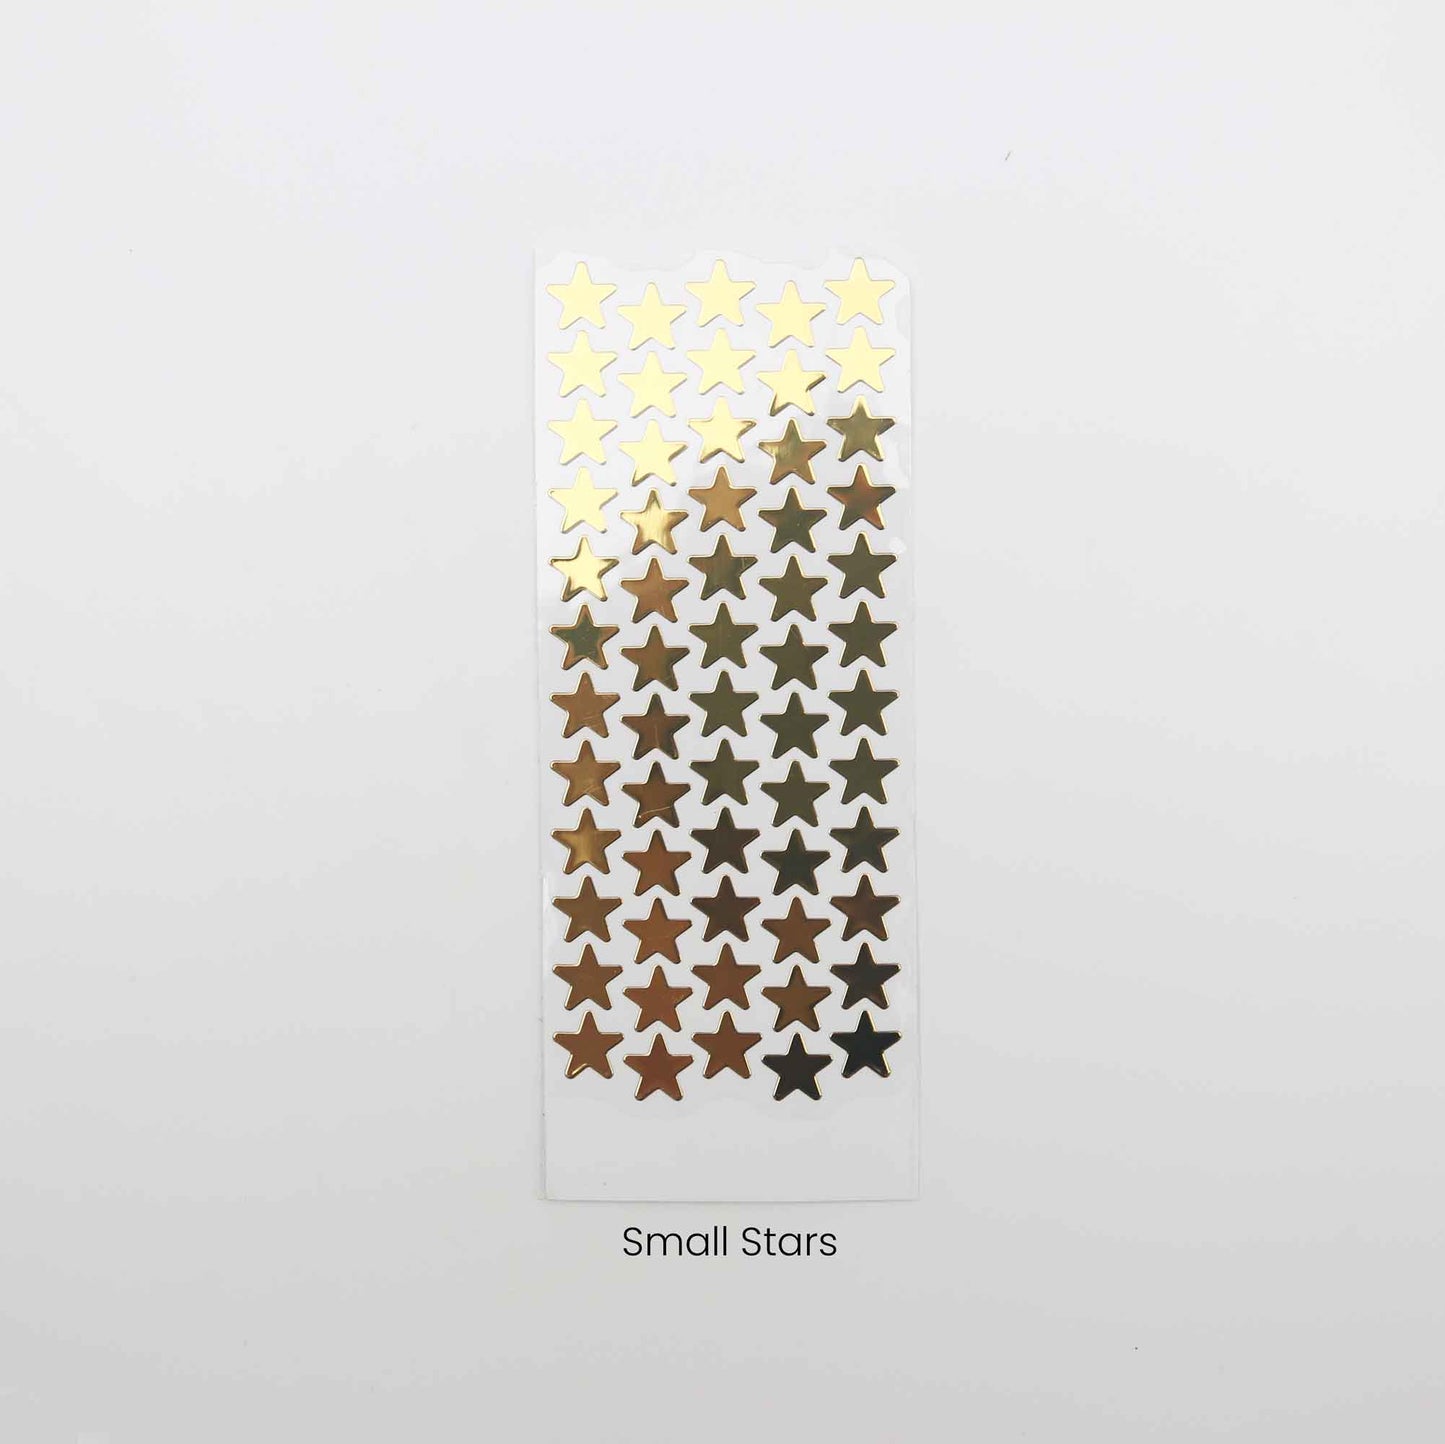 Gold Star Sticker